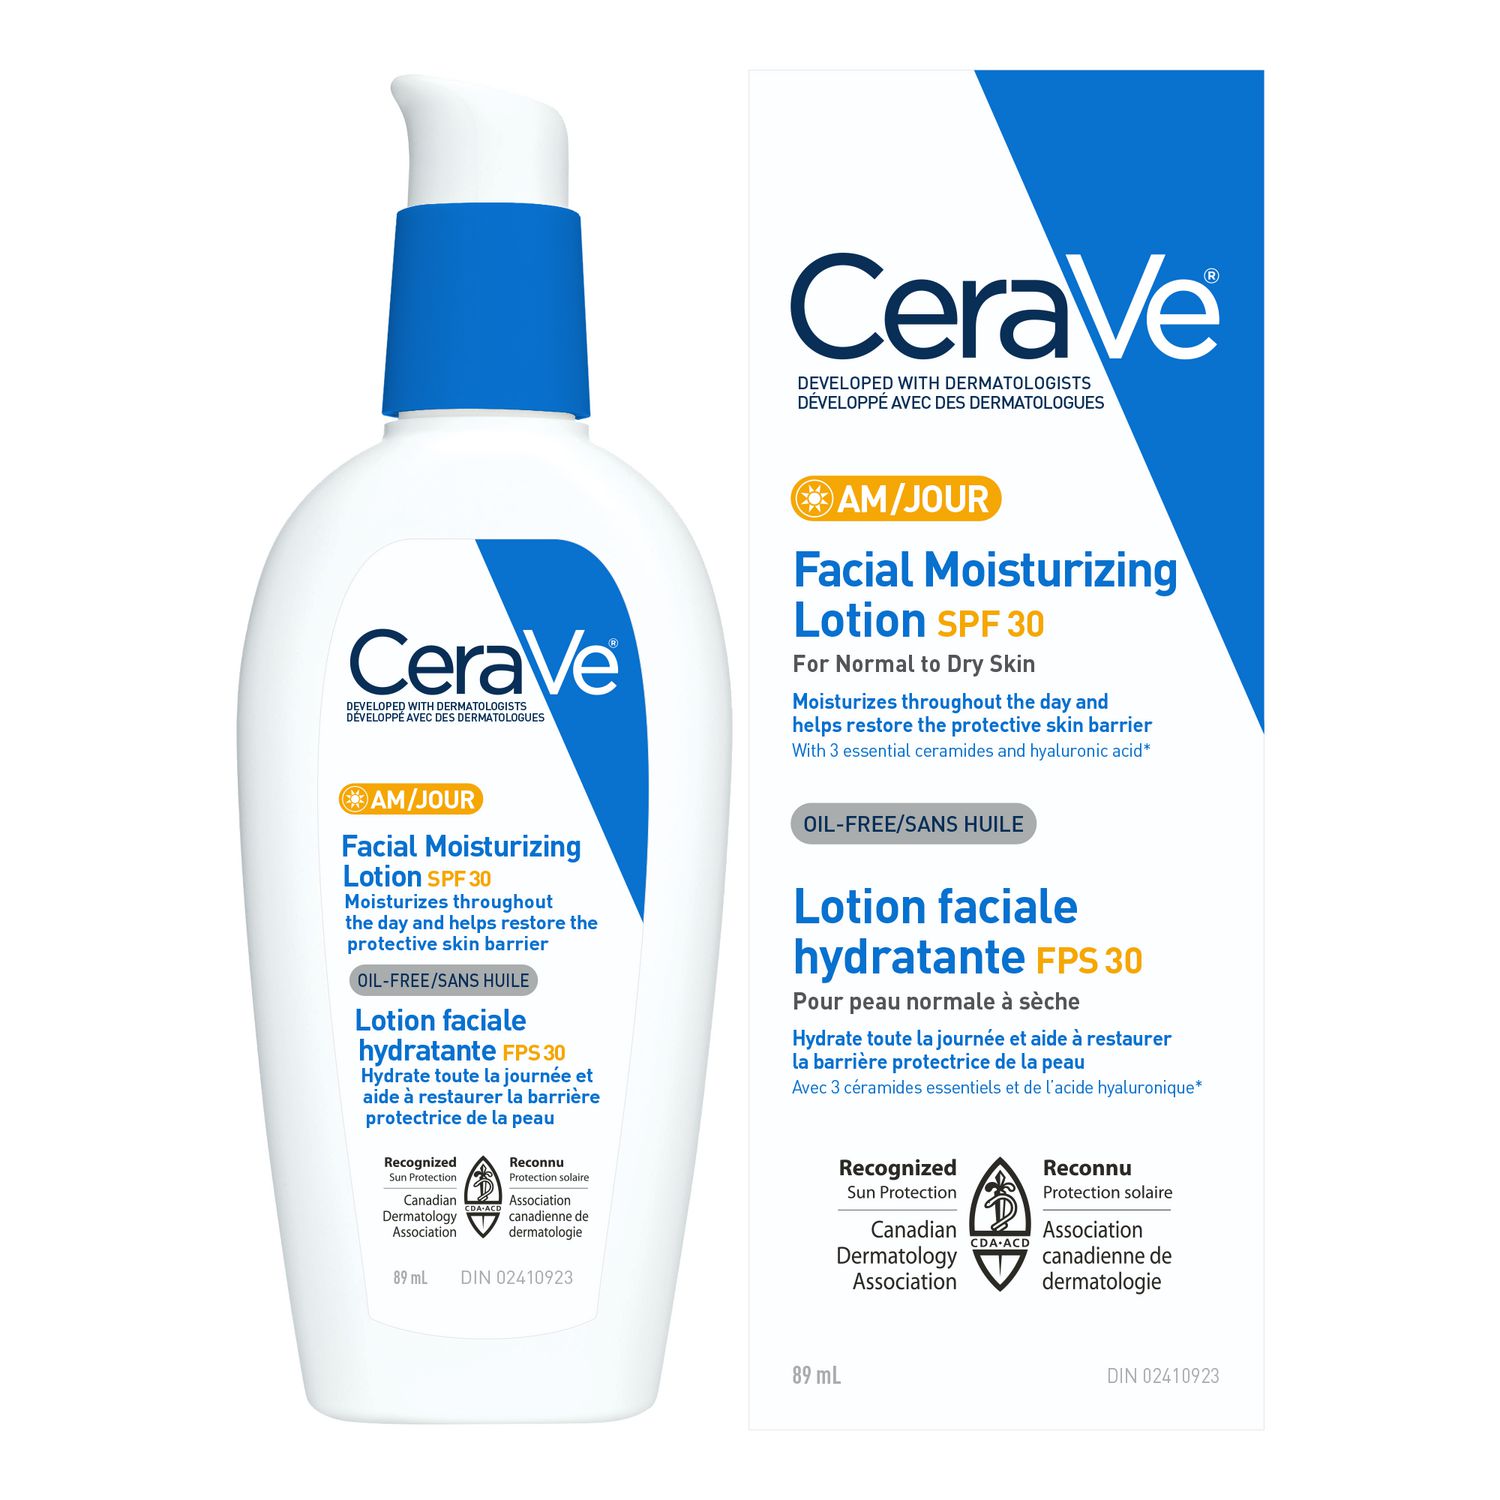 Crème hydratante pour peau normale à sèche, 453 g – CeraVe : Hydratant